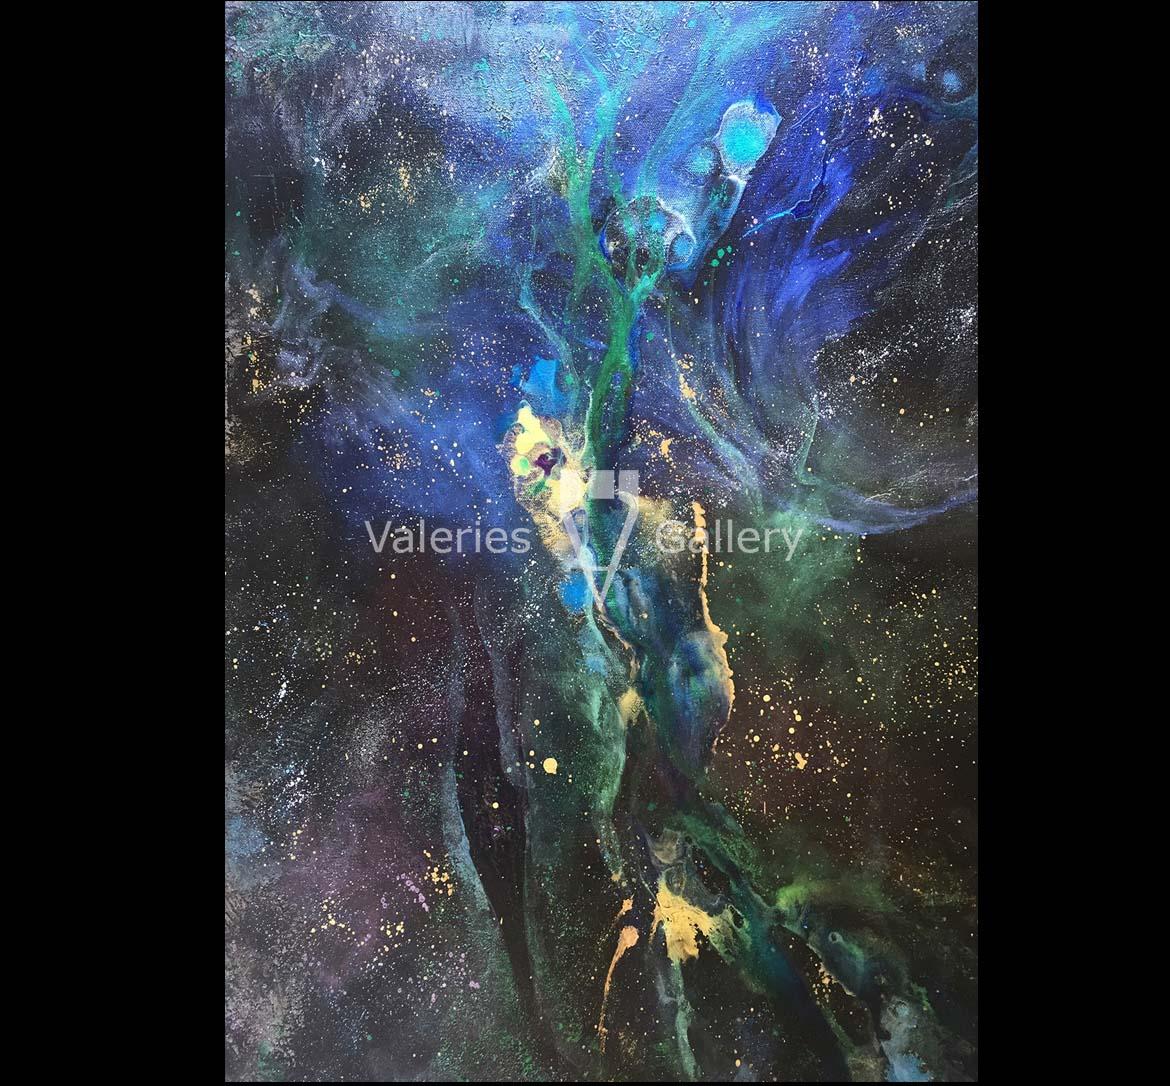 Seahorse Nebula